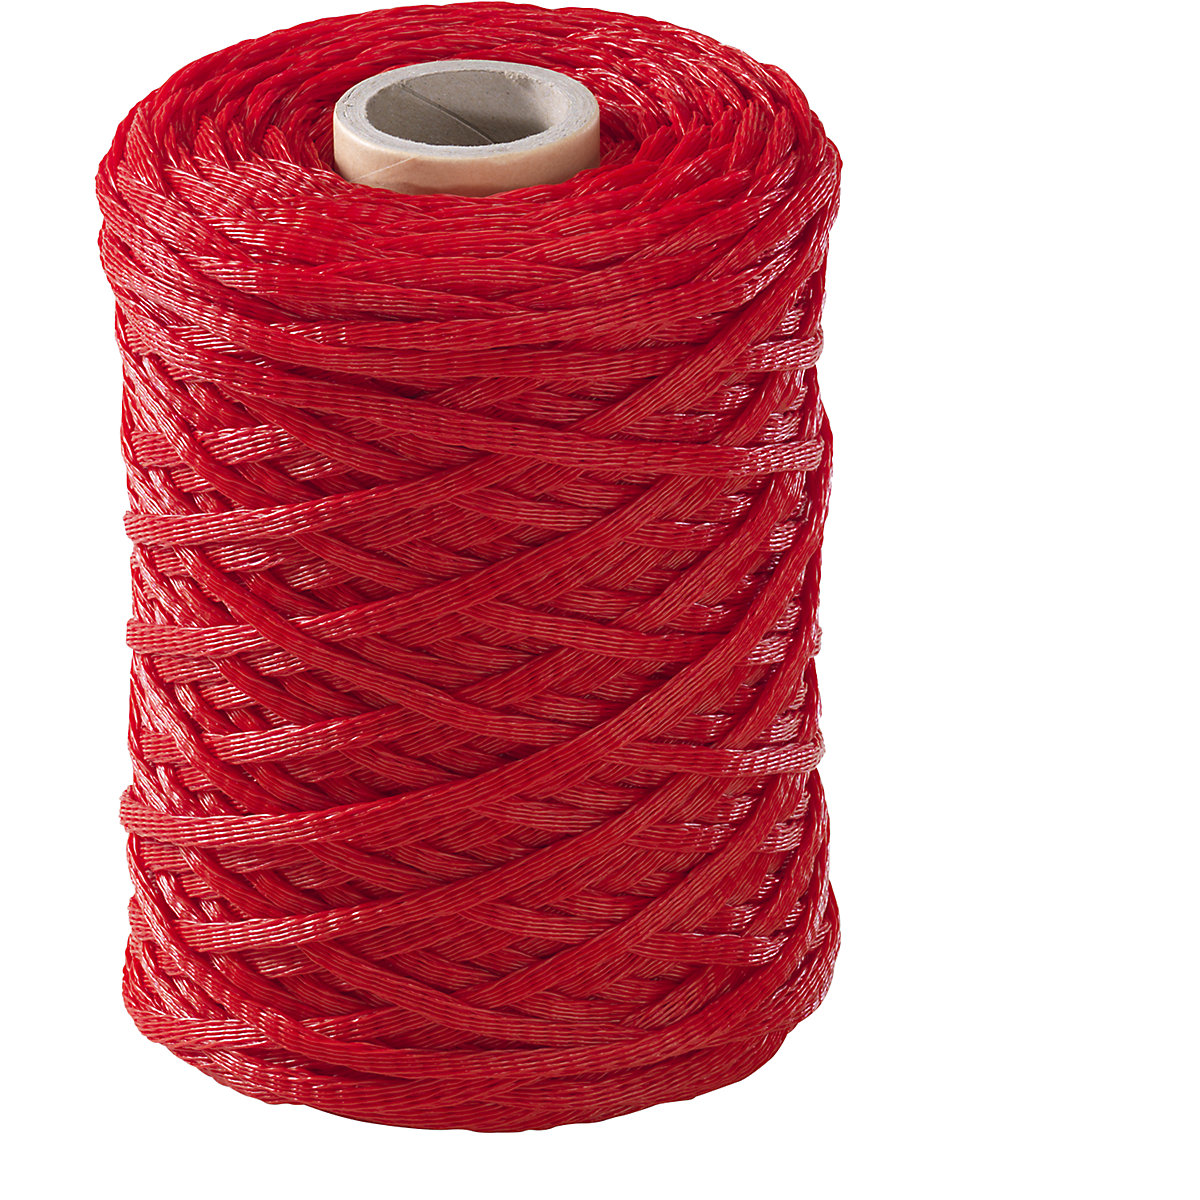 Materiaalbeschermingsnet, polyethyleen, 1 rol, rood, voor Ø 4 – 10 mm-2